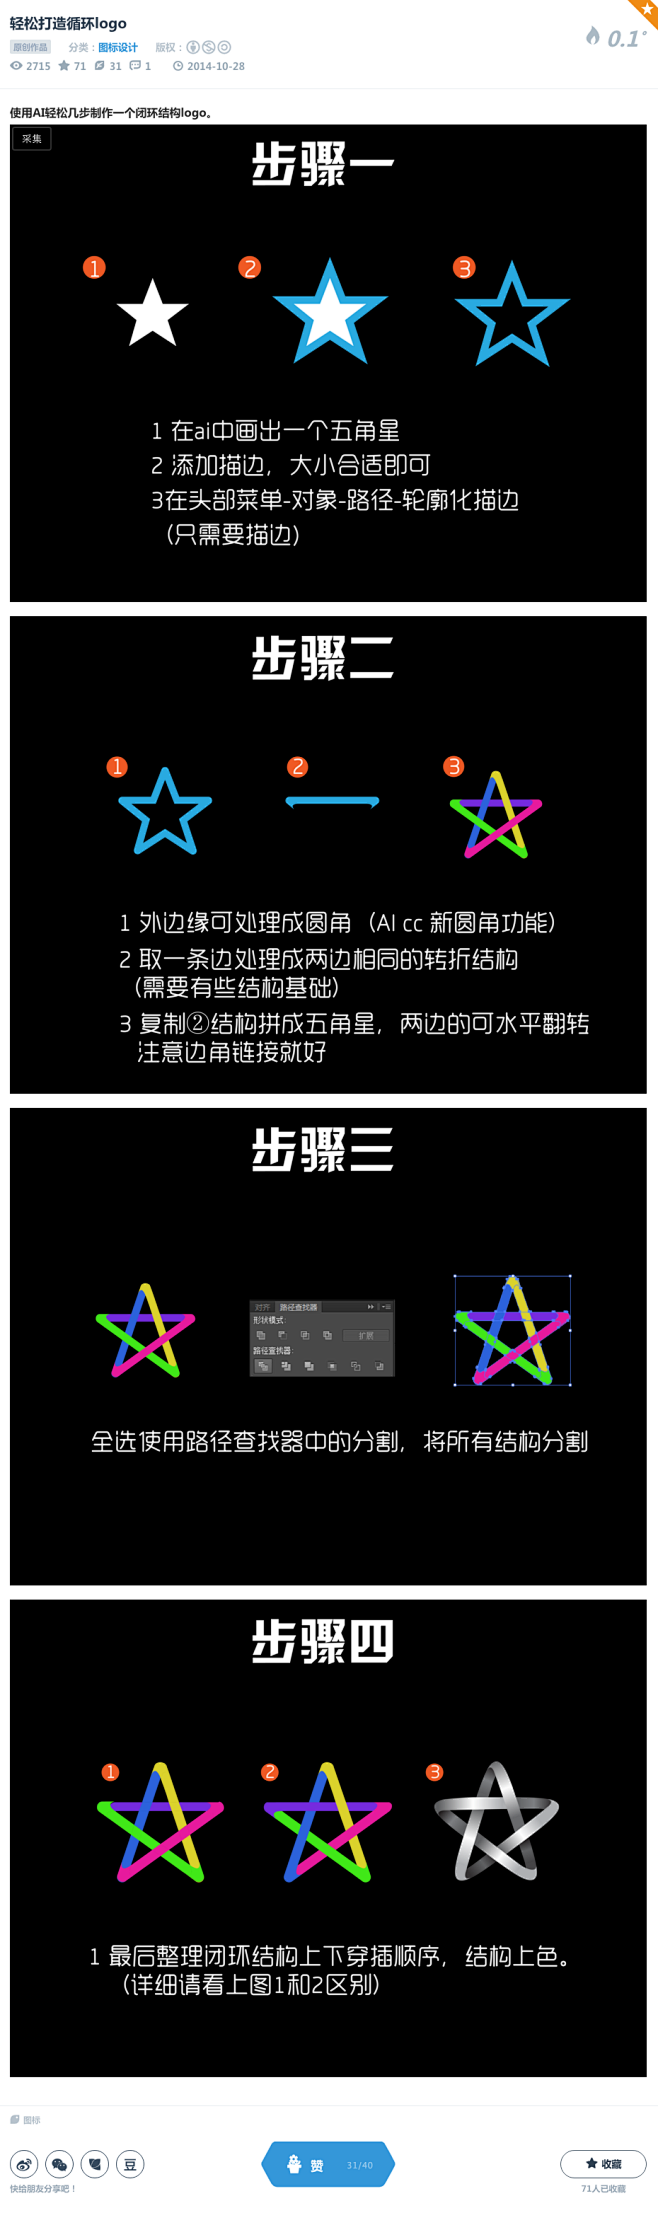 轻松打造循环logo-UI中国-专业界面...